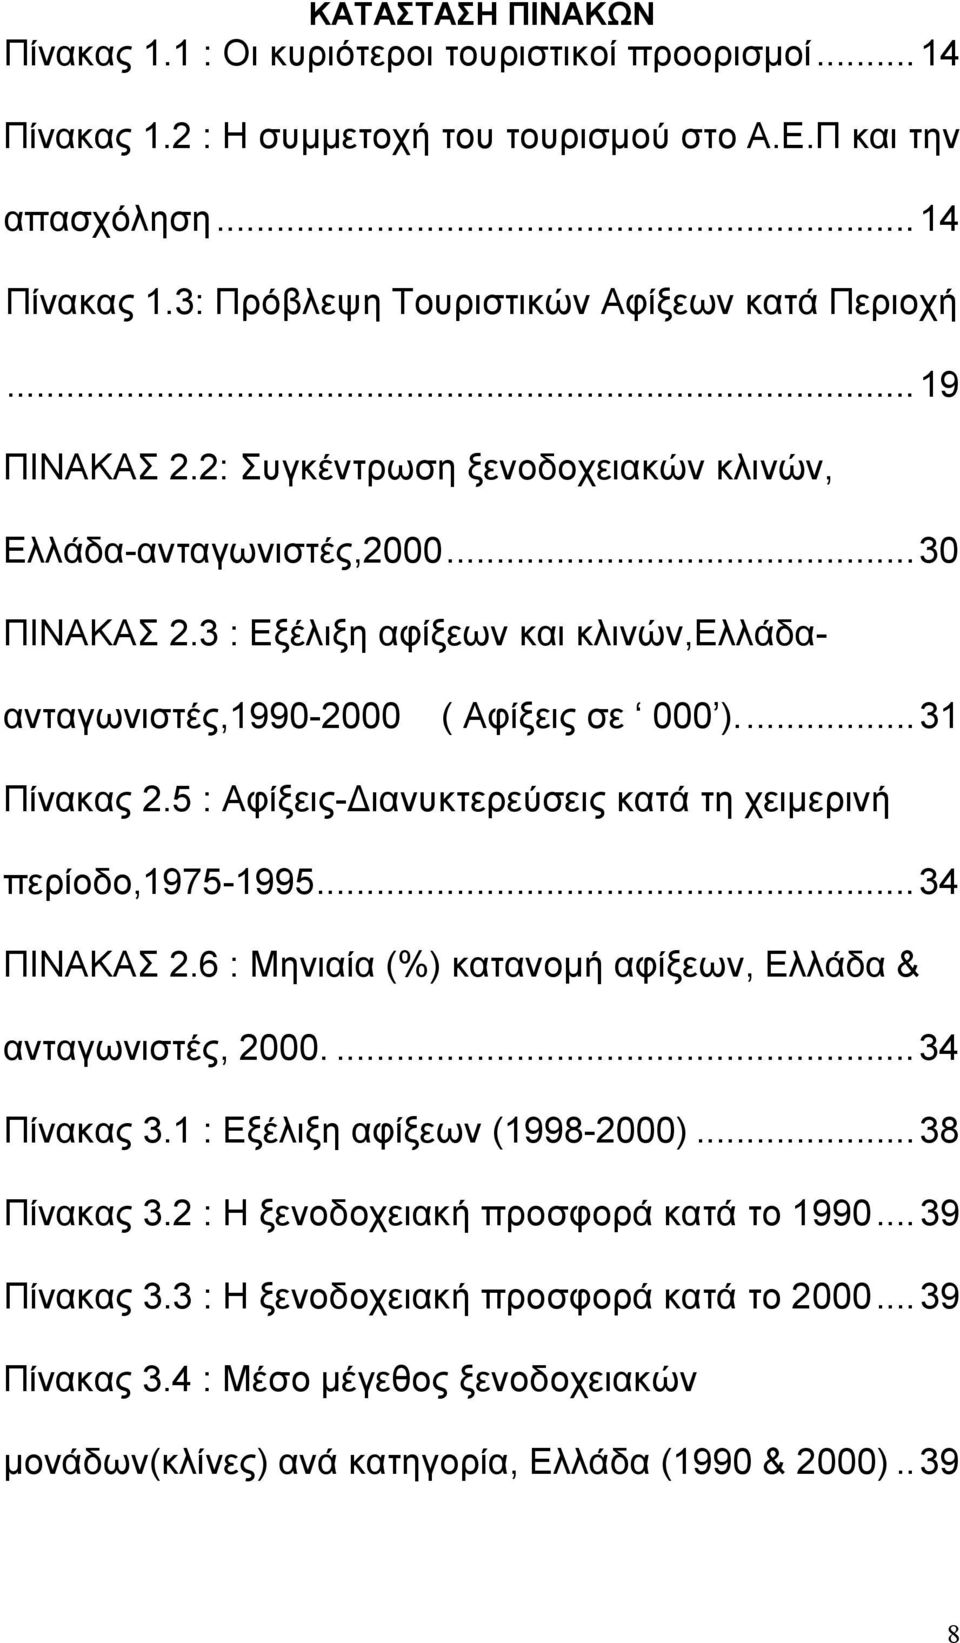 5 : Αφίξεις-Διανυκτερεύσεις κατά τη χειμερινή περίοδο,1975-1995...34 ΠΙΝΑΚΑΣ 2.6 : Μηνιαία (%) κατανομή αφίξεων, Ελλάδα & ανταγωνιστές, 2000...34 Πίνακας 3.1 : Εξέλιξη αφίξεων (1998-2000).